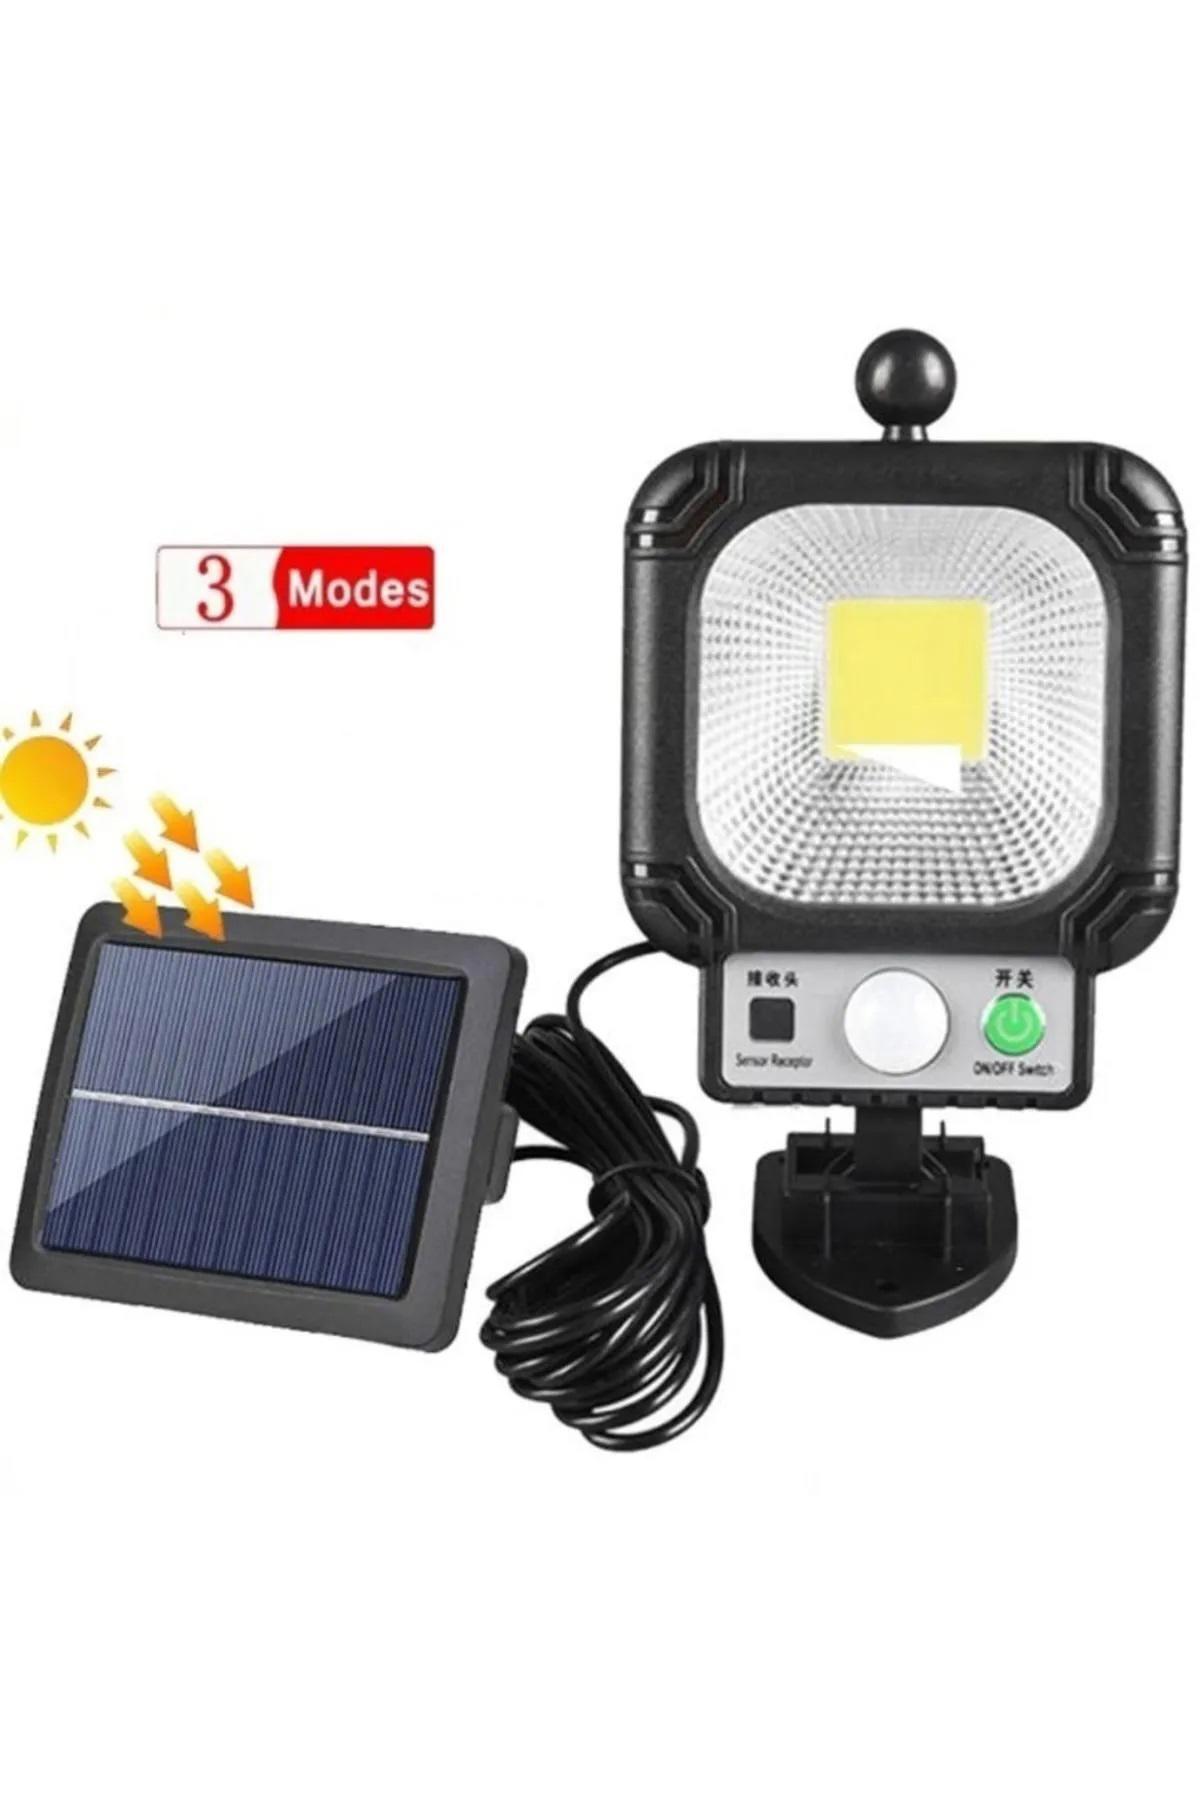 Kablolu Solar Güneş Enerjili Bahçe-sokak-yol Aydınlatması Hareket Sensörlü Sokak Lambası RE-Jx855 JX855